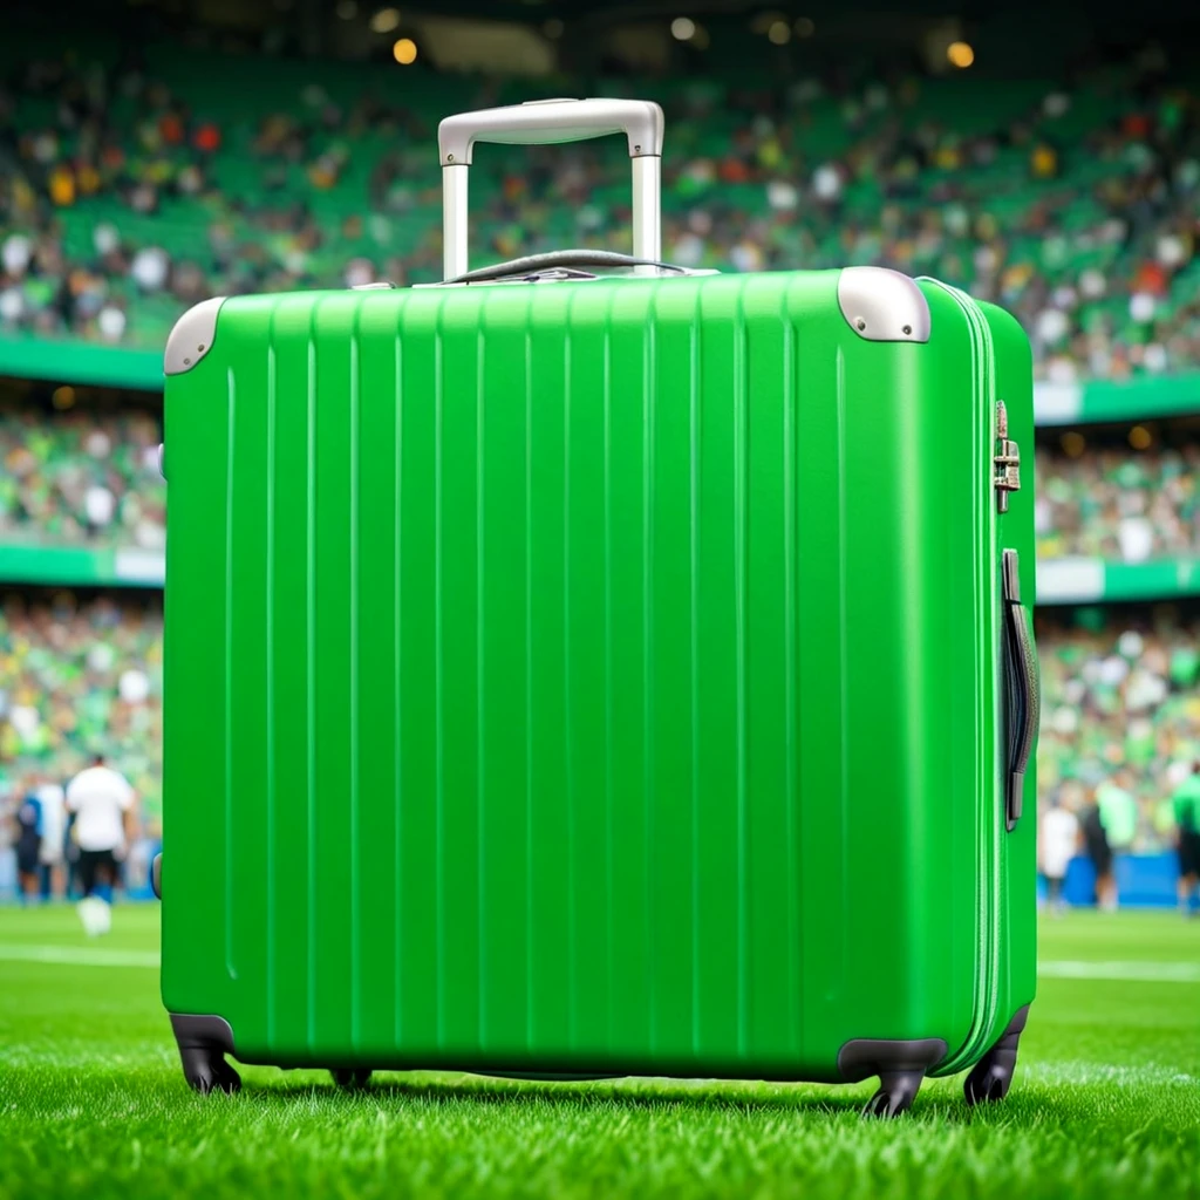 (suitcase showcase) <lora:41_suitcase_showcase:1.1>
Green background,
high quality, professional, highres, amazing, dramat...